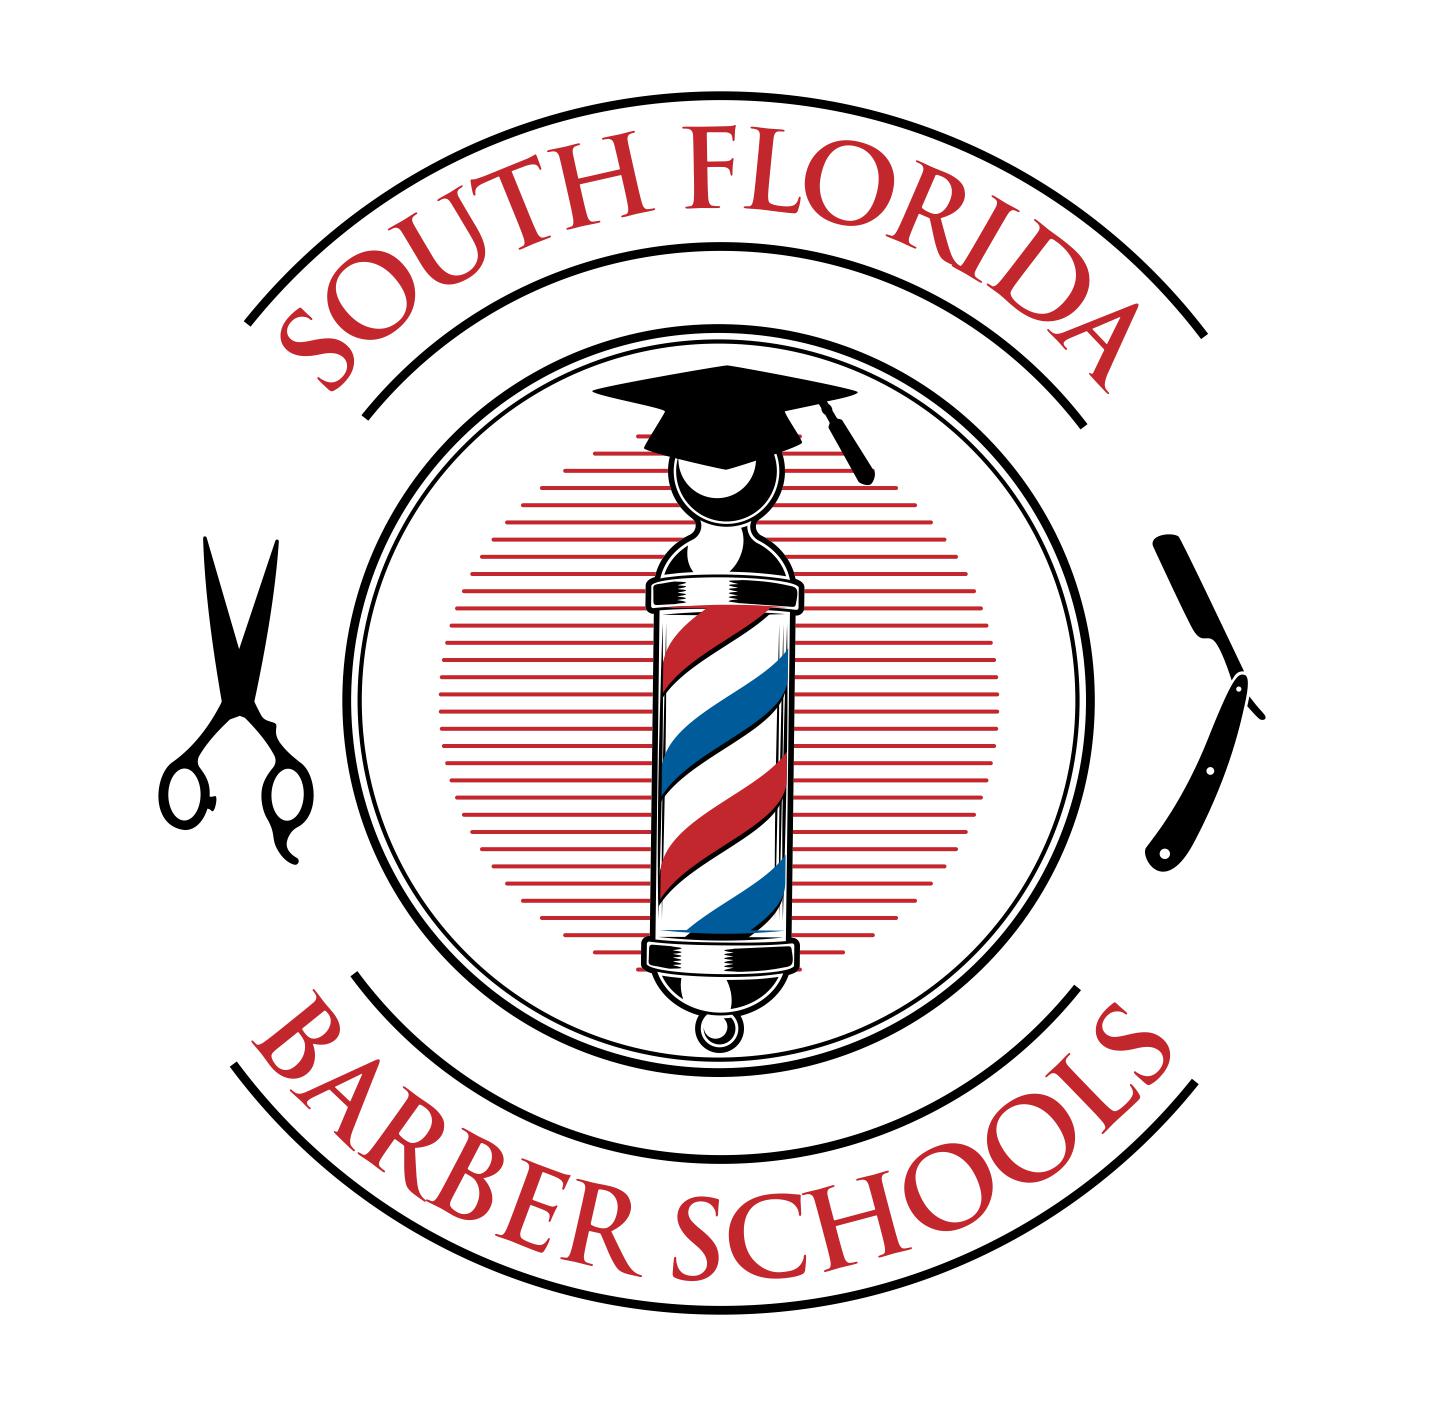 South Florida Barber Schools